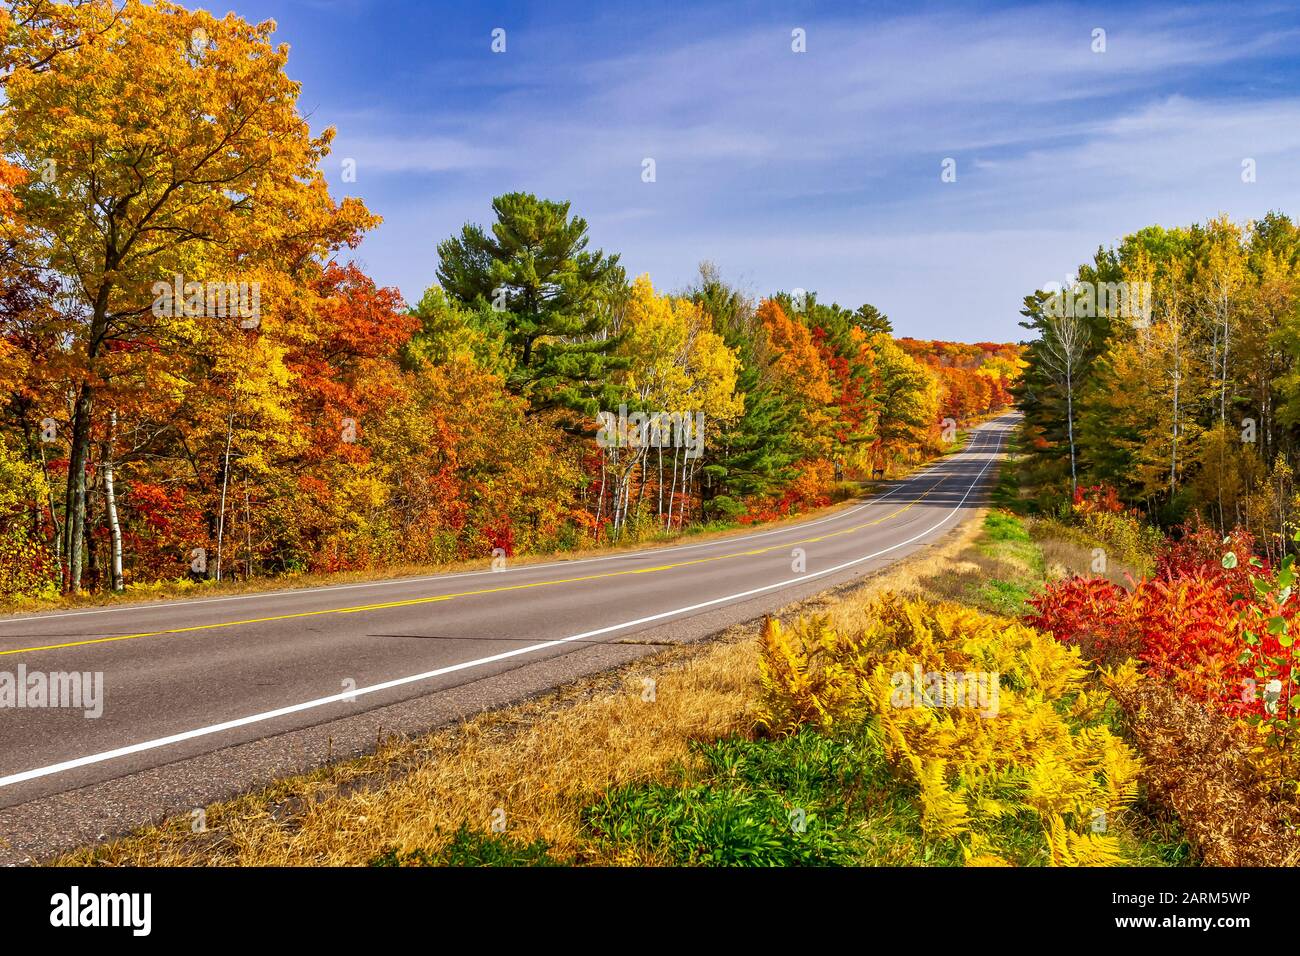 Une autoroute aux couleurs éclatantes du feuillage d'automne près de Minocqua, Wisconsin, États-Unis. Banque D'Images